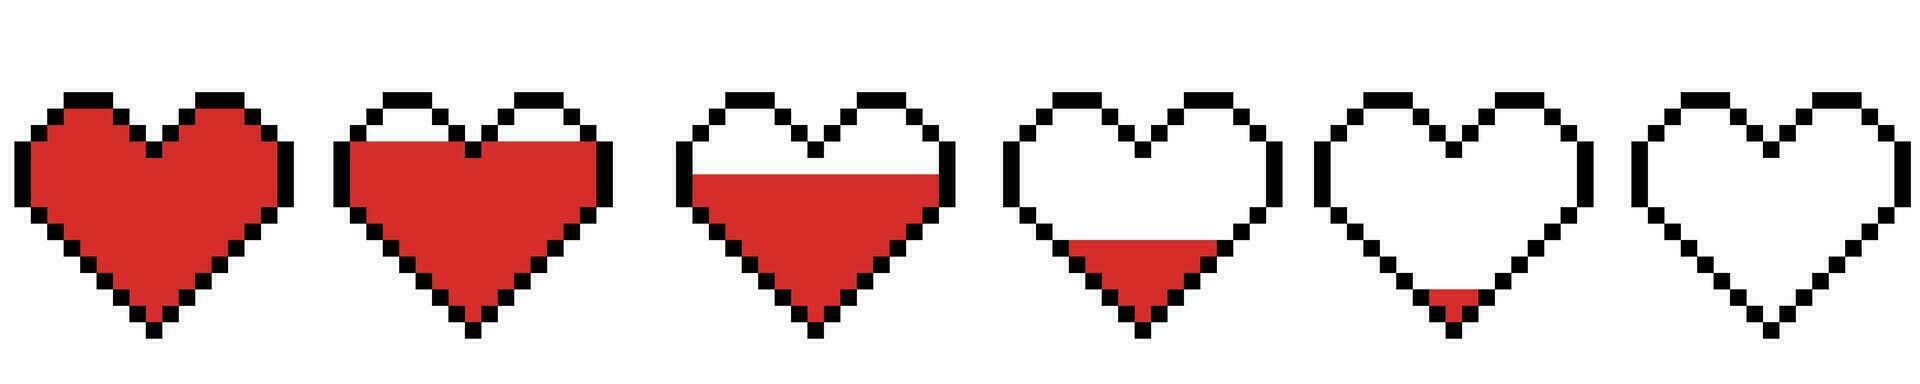 píxel corazón recopilación. píxel corazón icono, píxel corazones para juego. rojo corazones de vida, juego vida símbolo. indicadores de salud, juego Progreso barras. vector